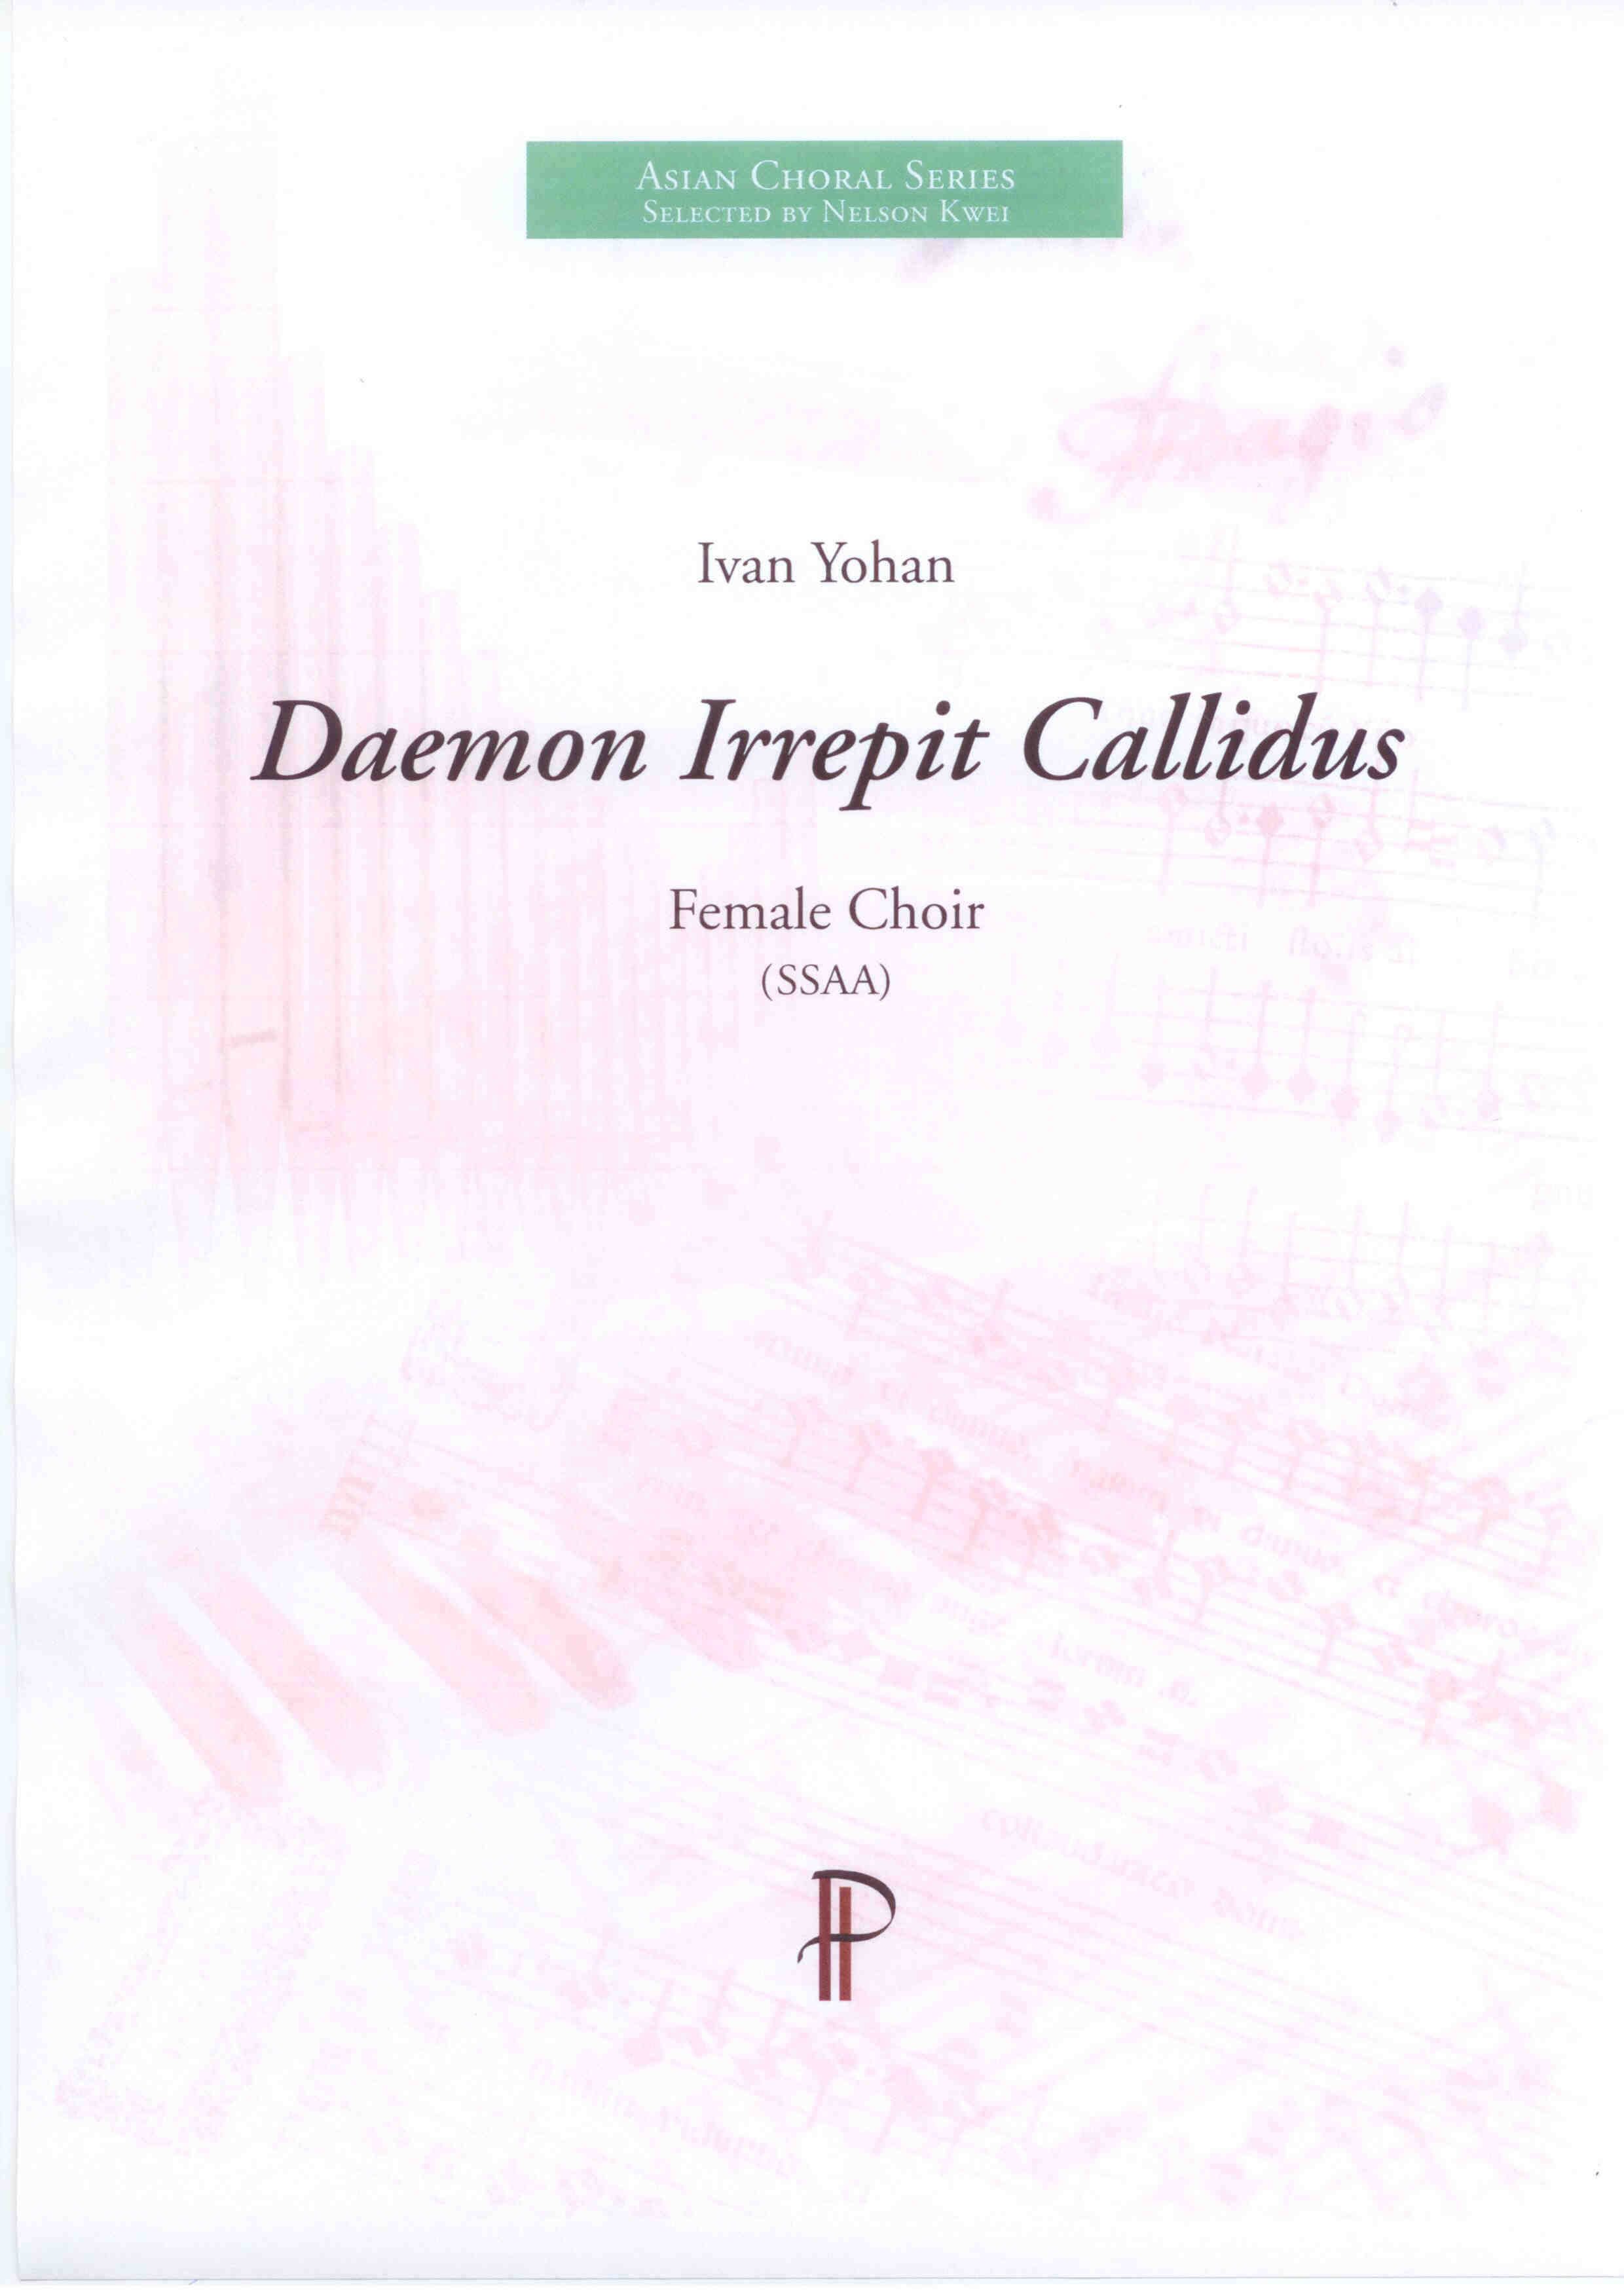 Daemon Irrepit Callidus - Show sample score